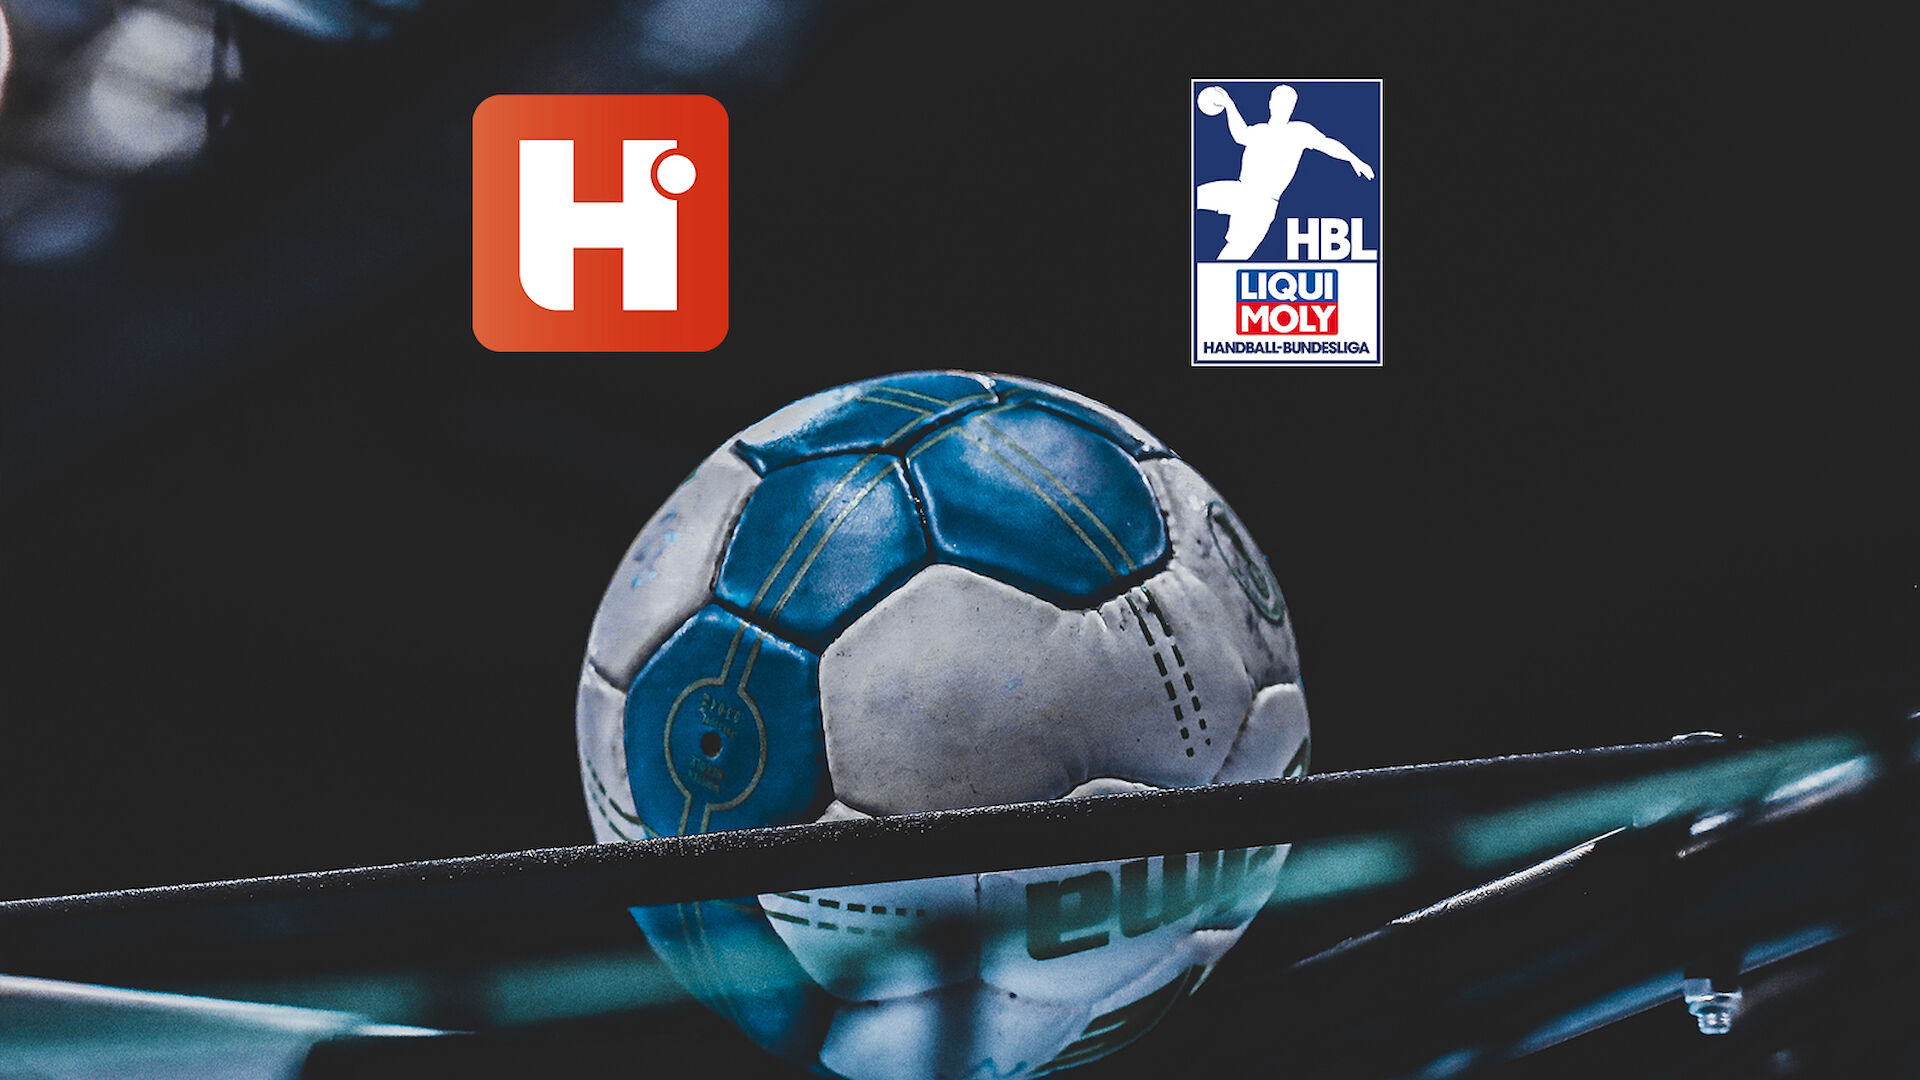 Neue Funktionen, neue Inhalte Handball wächst weiter News LIQUI MOLY HBL